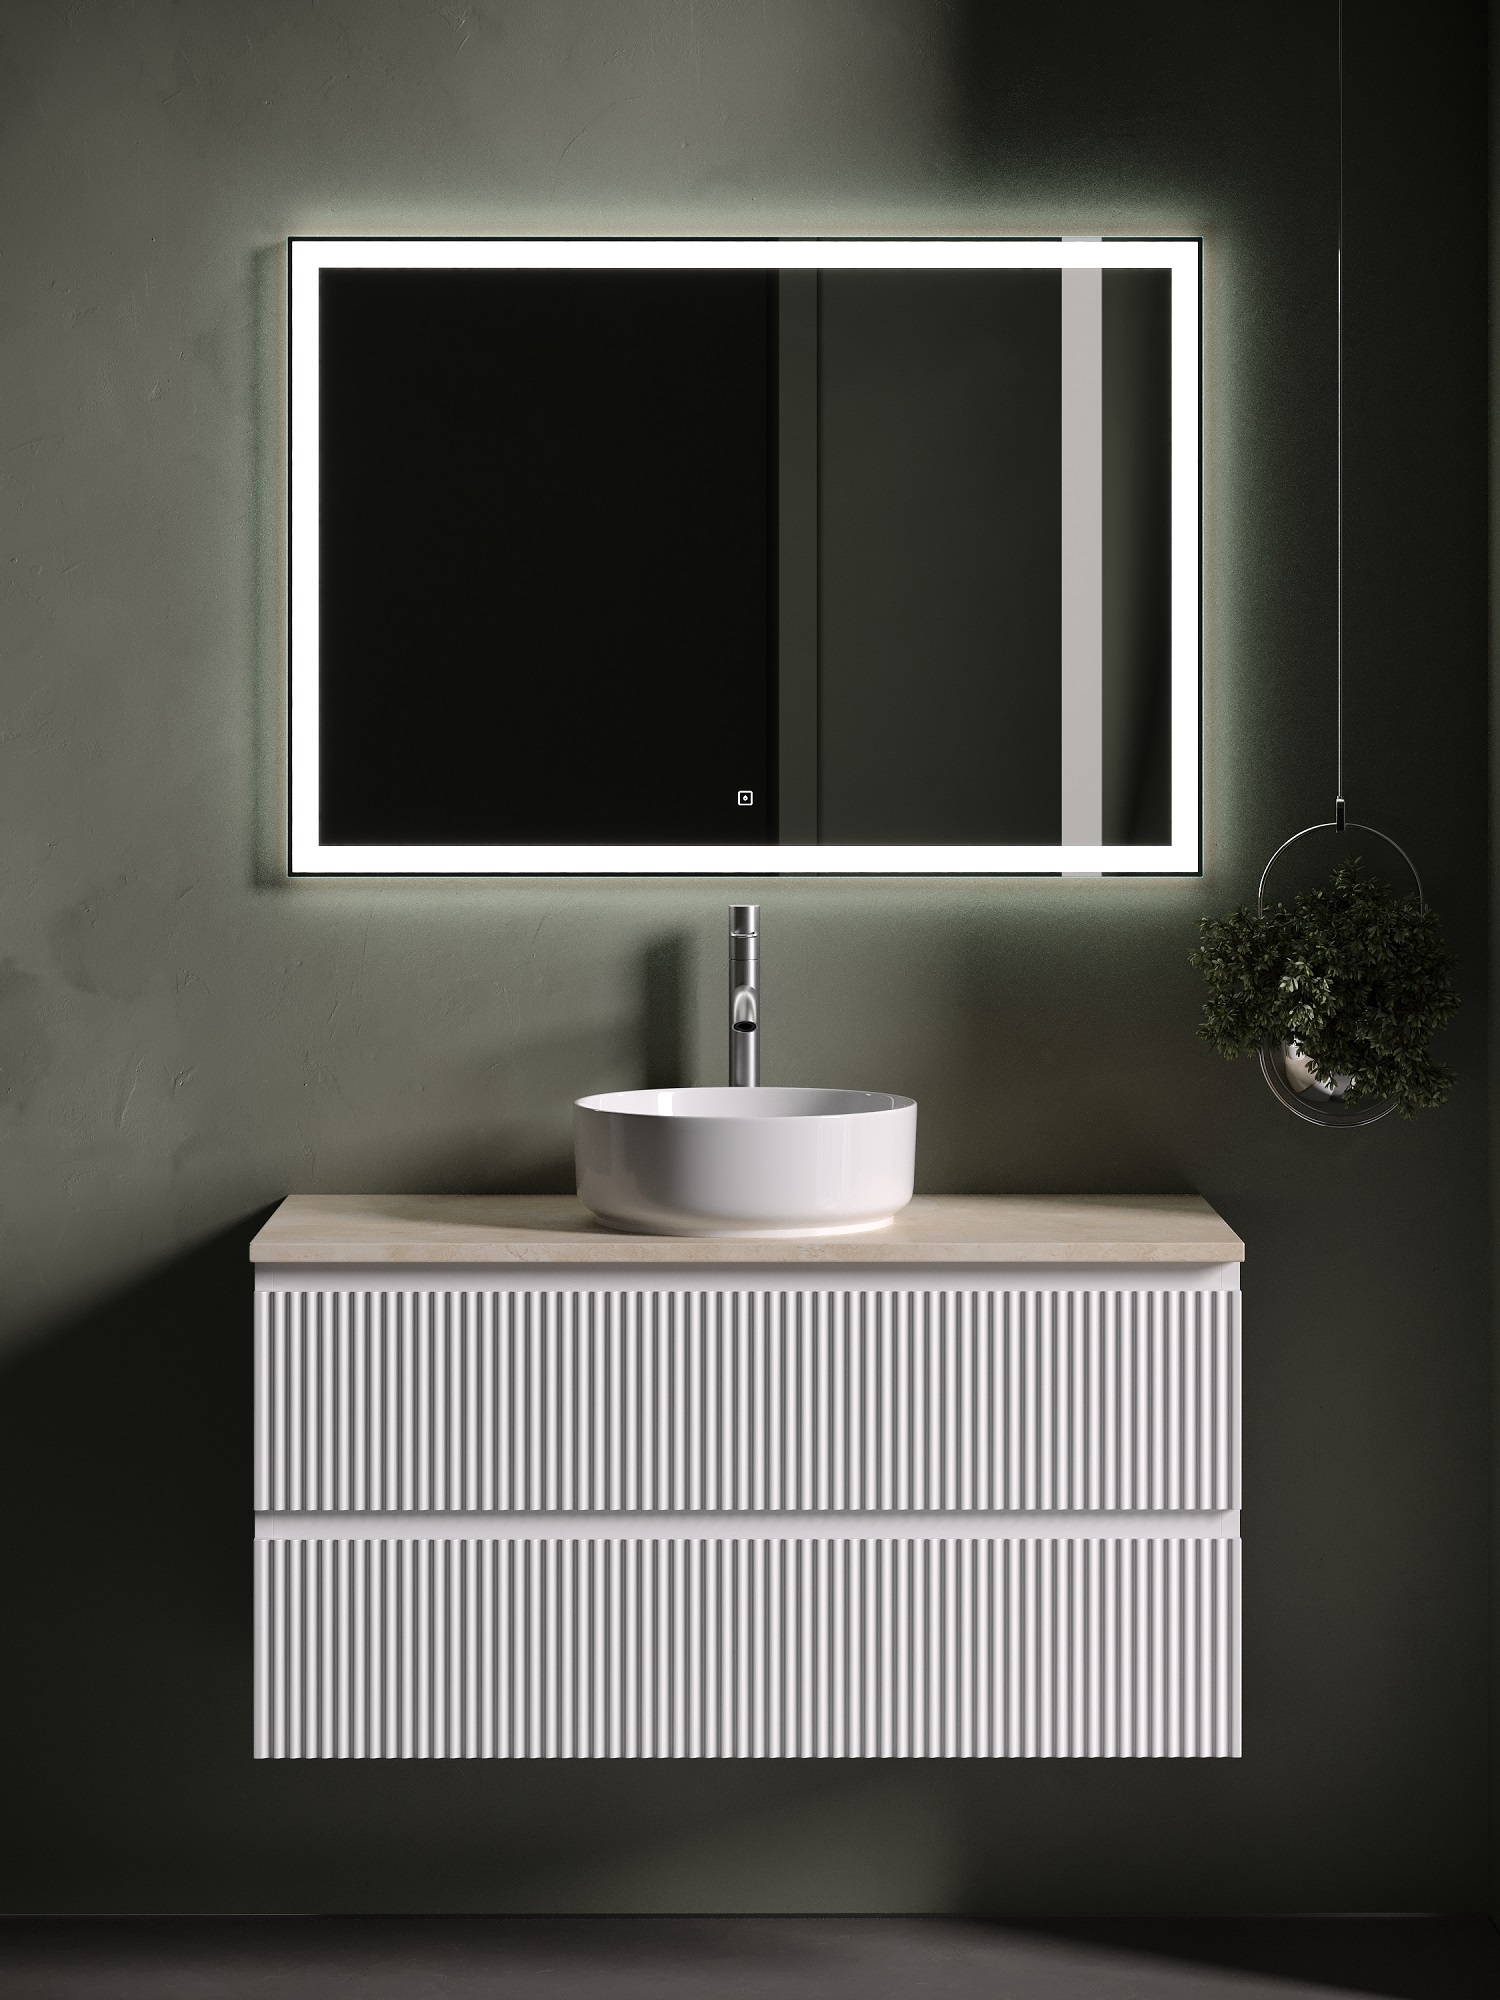 Мебель для ванной Sancos Snob R 100 подвесная, столешница kreman, Bianco (с отверстием под смеситель) reeves bianco кровать